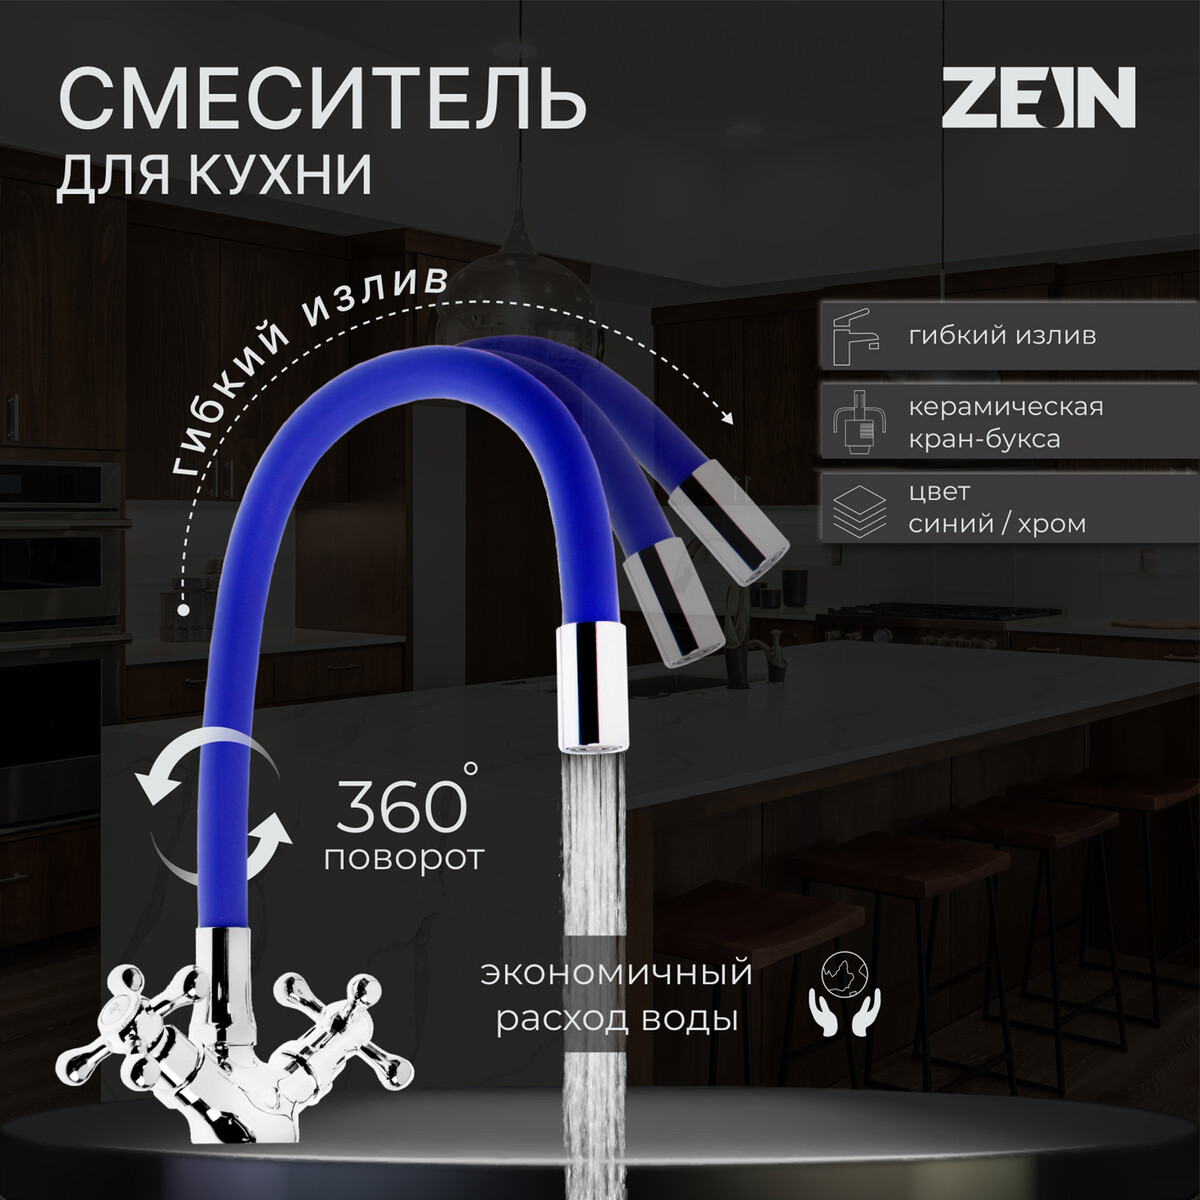 Смеситель для кухни zein z2105, двухвентильный, силиконовый излив, синий/хром